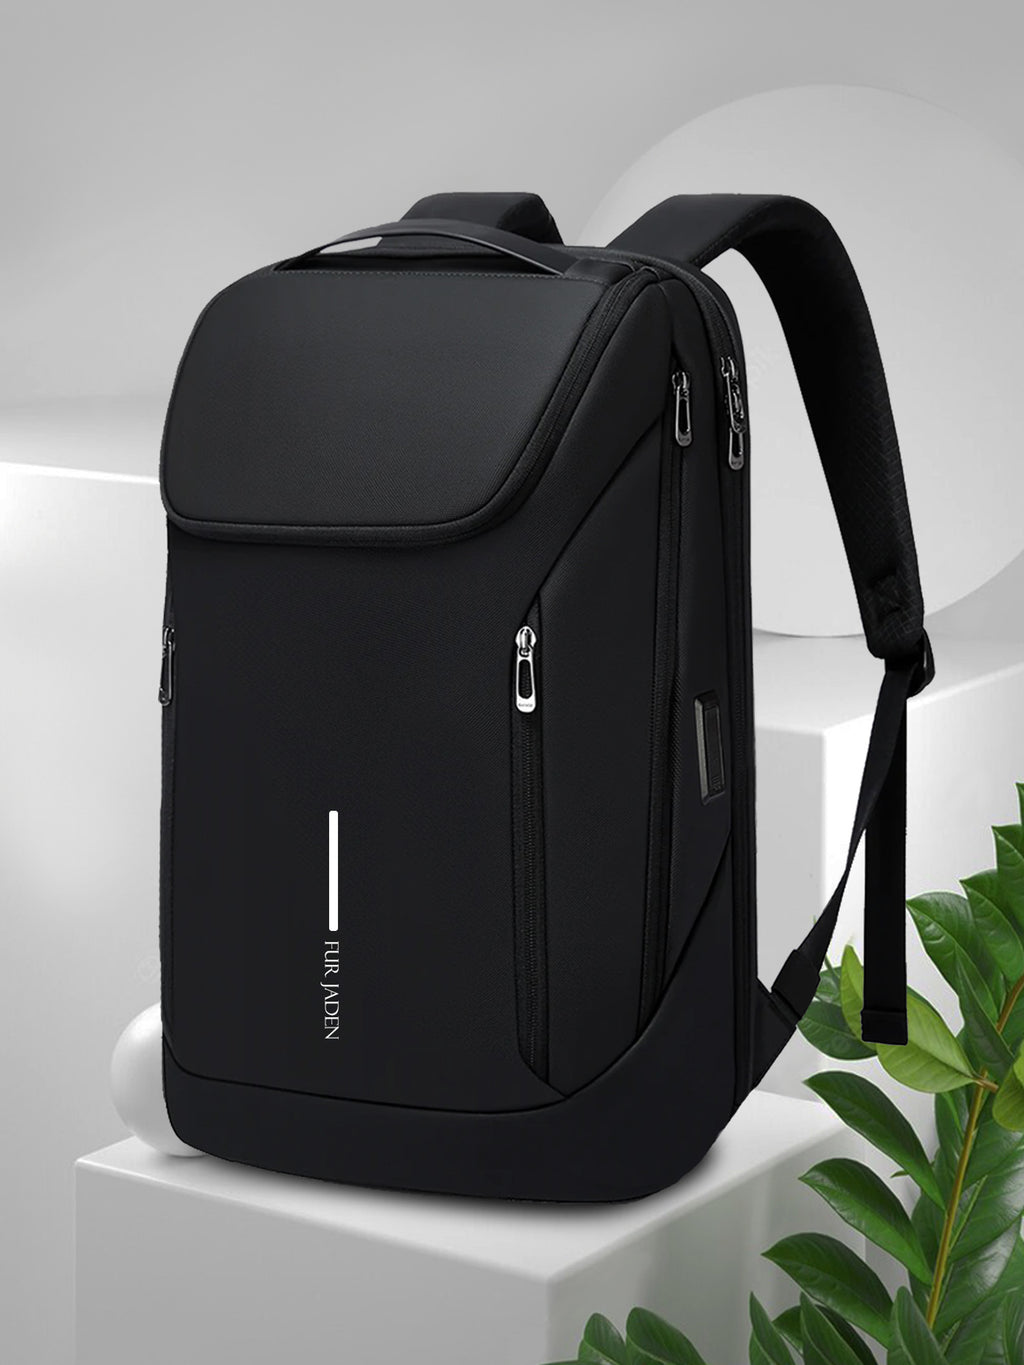 Fur Jaden Pro Series - The Pro V Laptop Backpack - Black – Fur Jaden ...